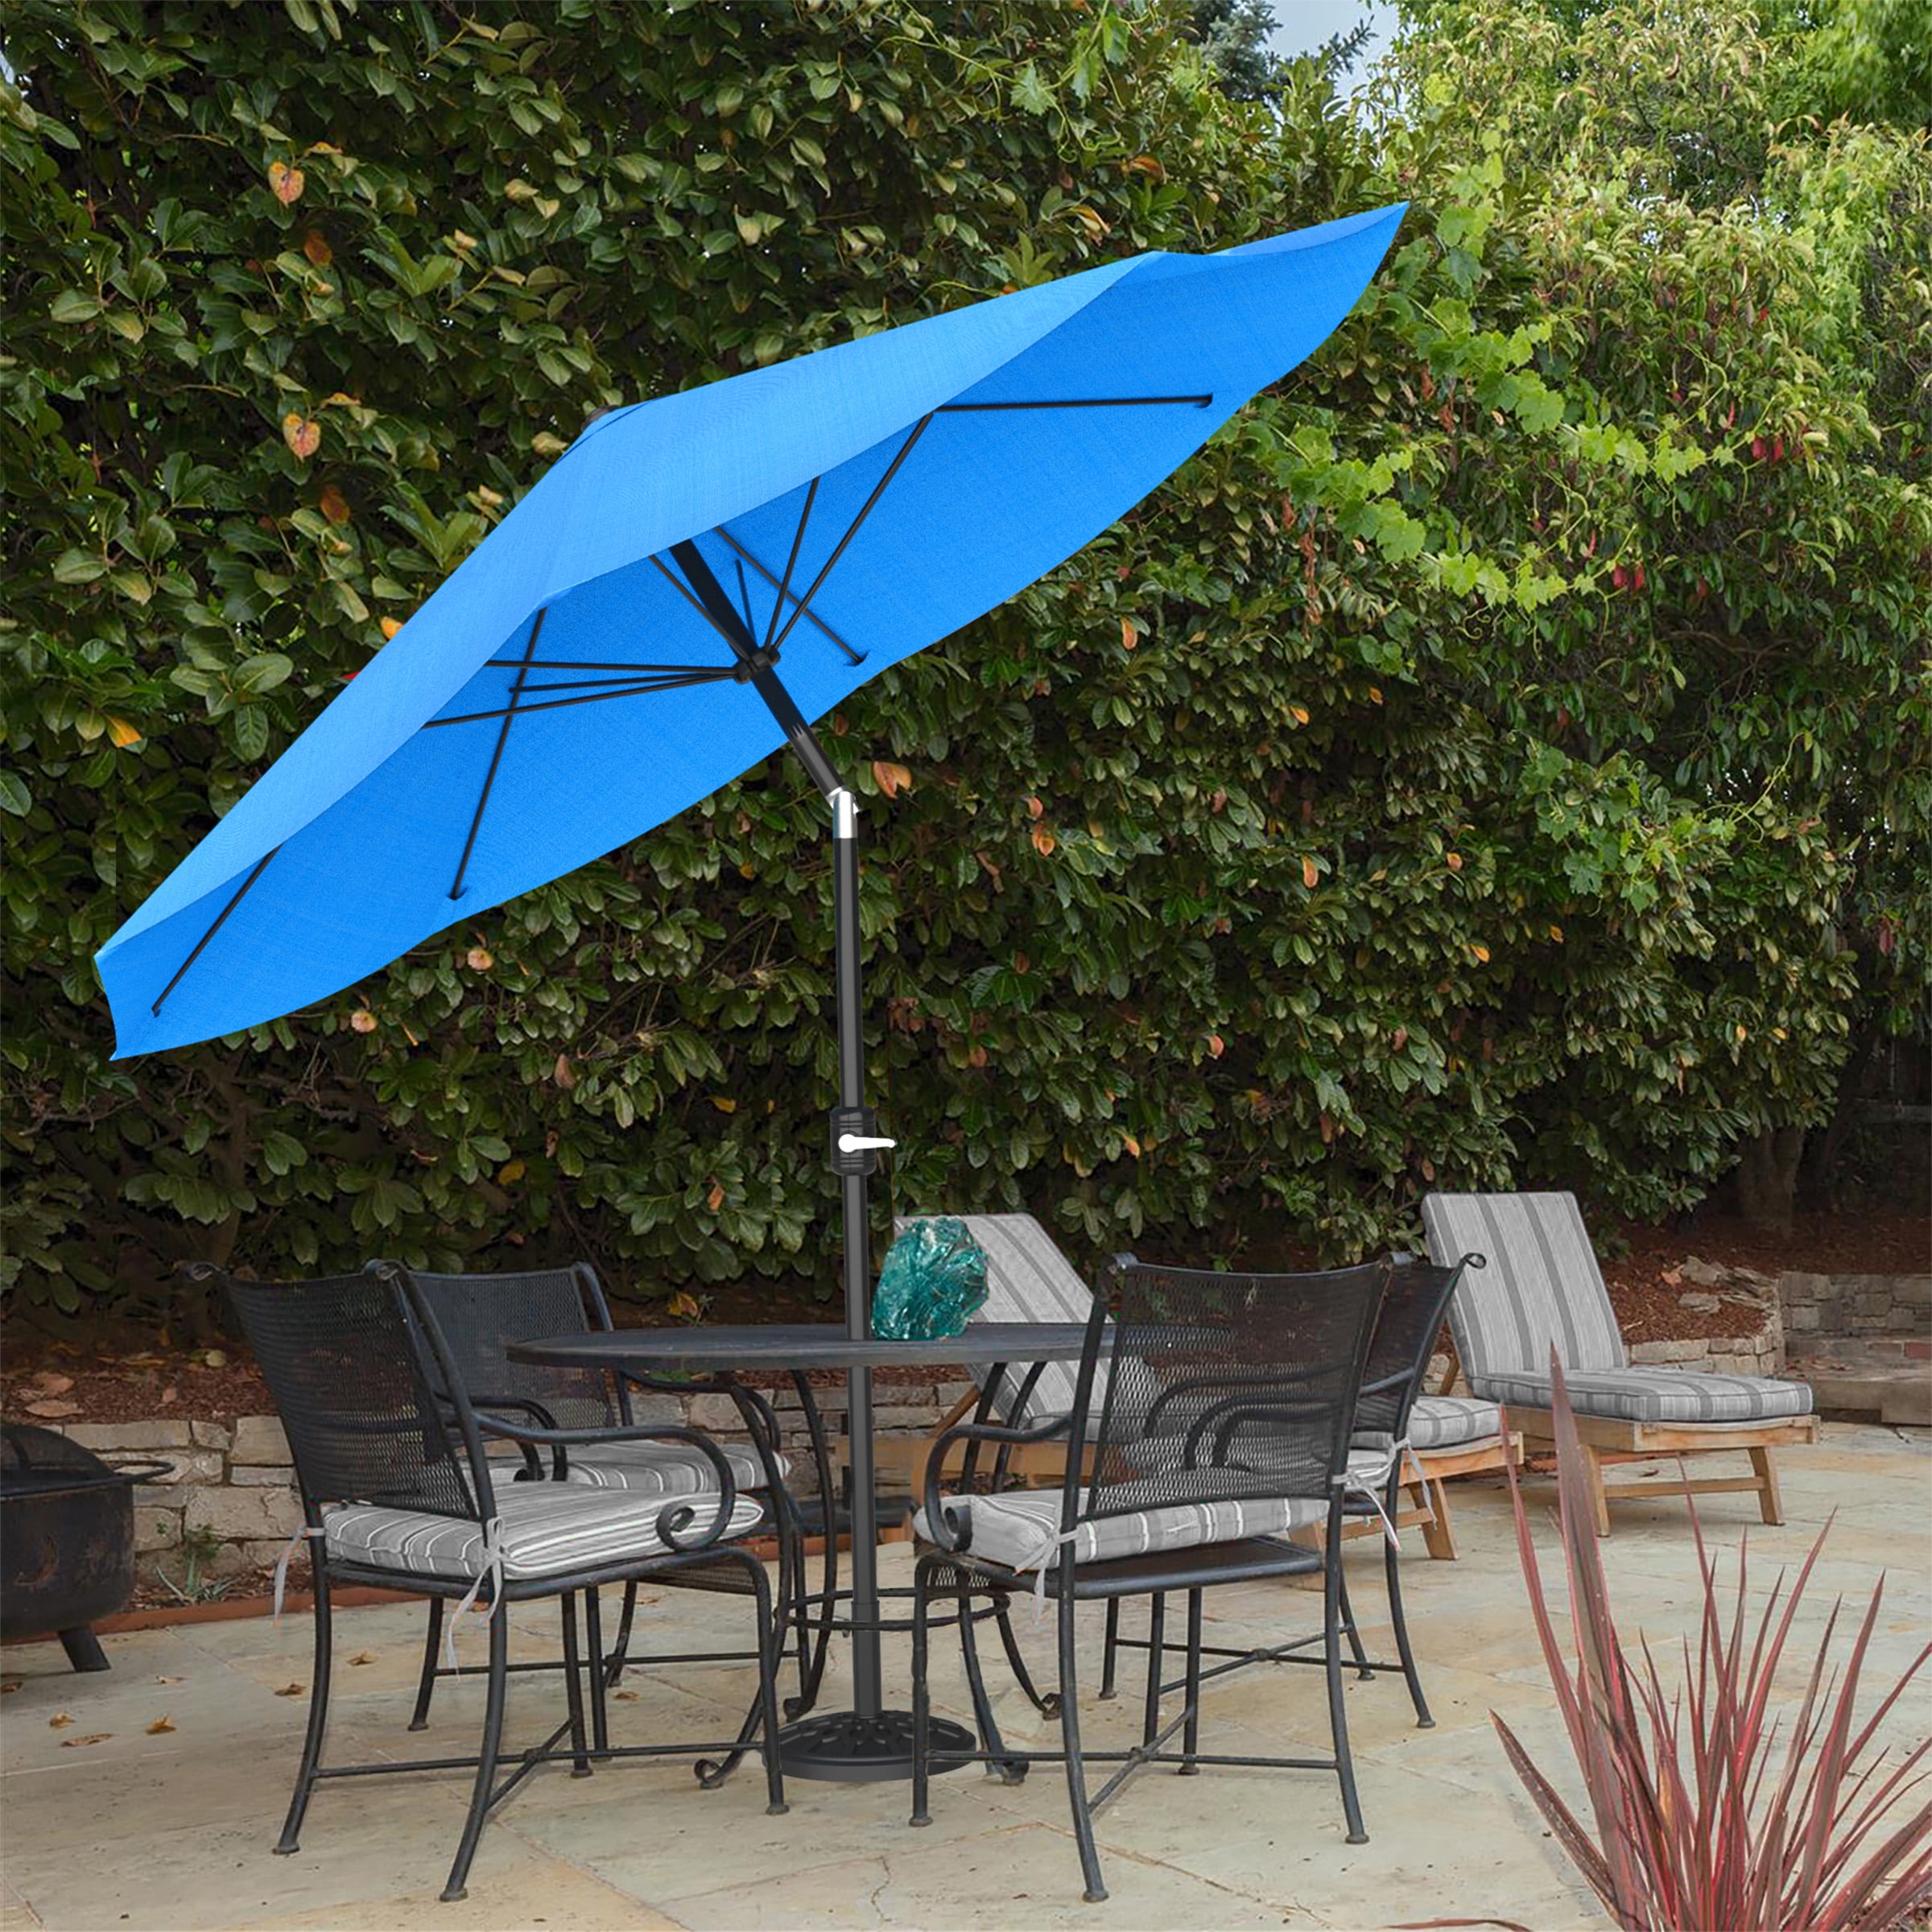 Green Garden Parasol Outdoor Patio Umbrella Confortable Shade Sun Protector 